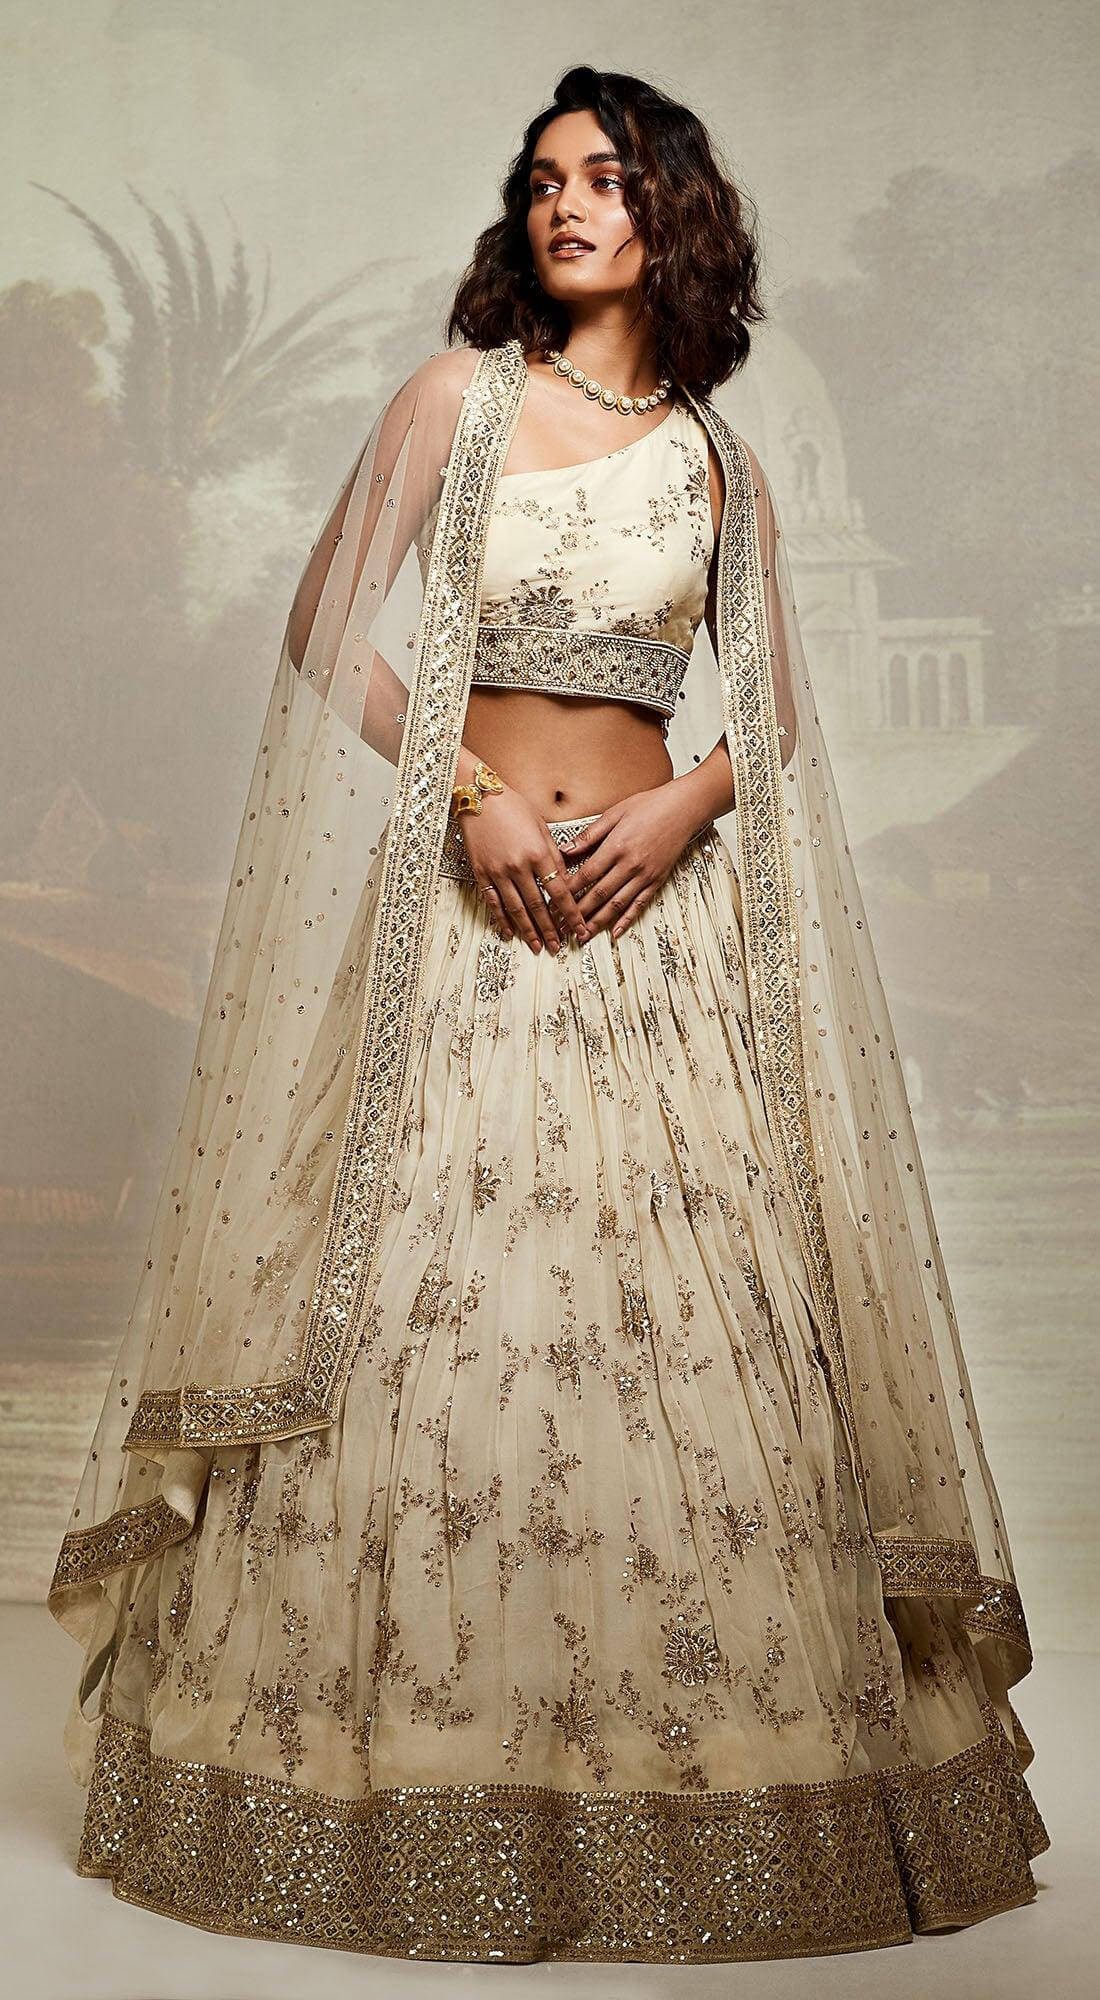 Beautiful Sonakshi Sinha Ethnic Wear Grey Net Party Wear Lehenga Choli |  Indian Online Ethnic Wear Website For Women